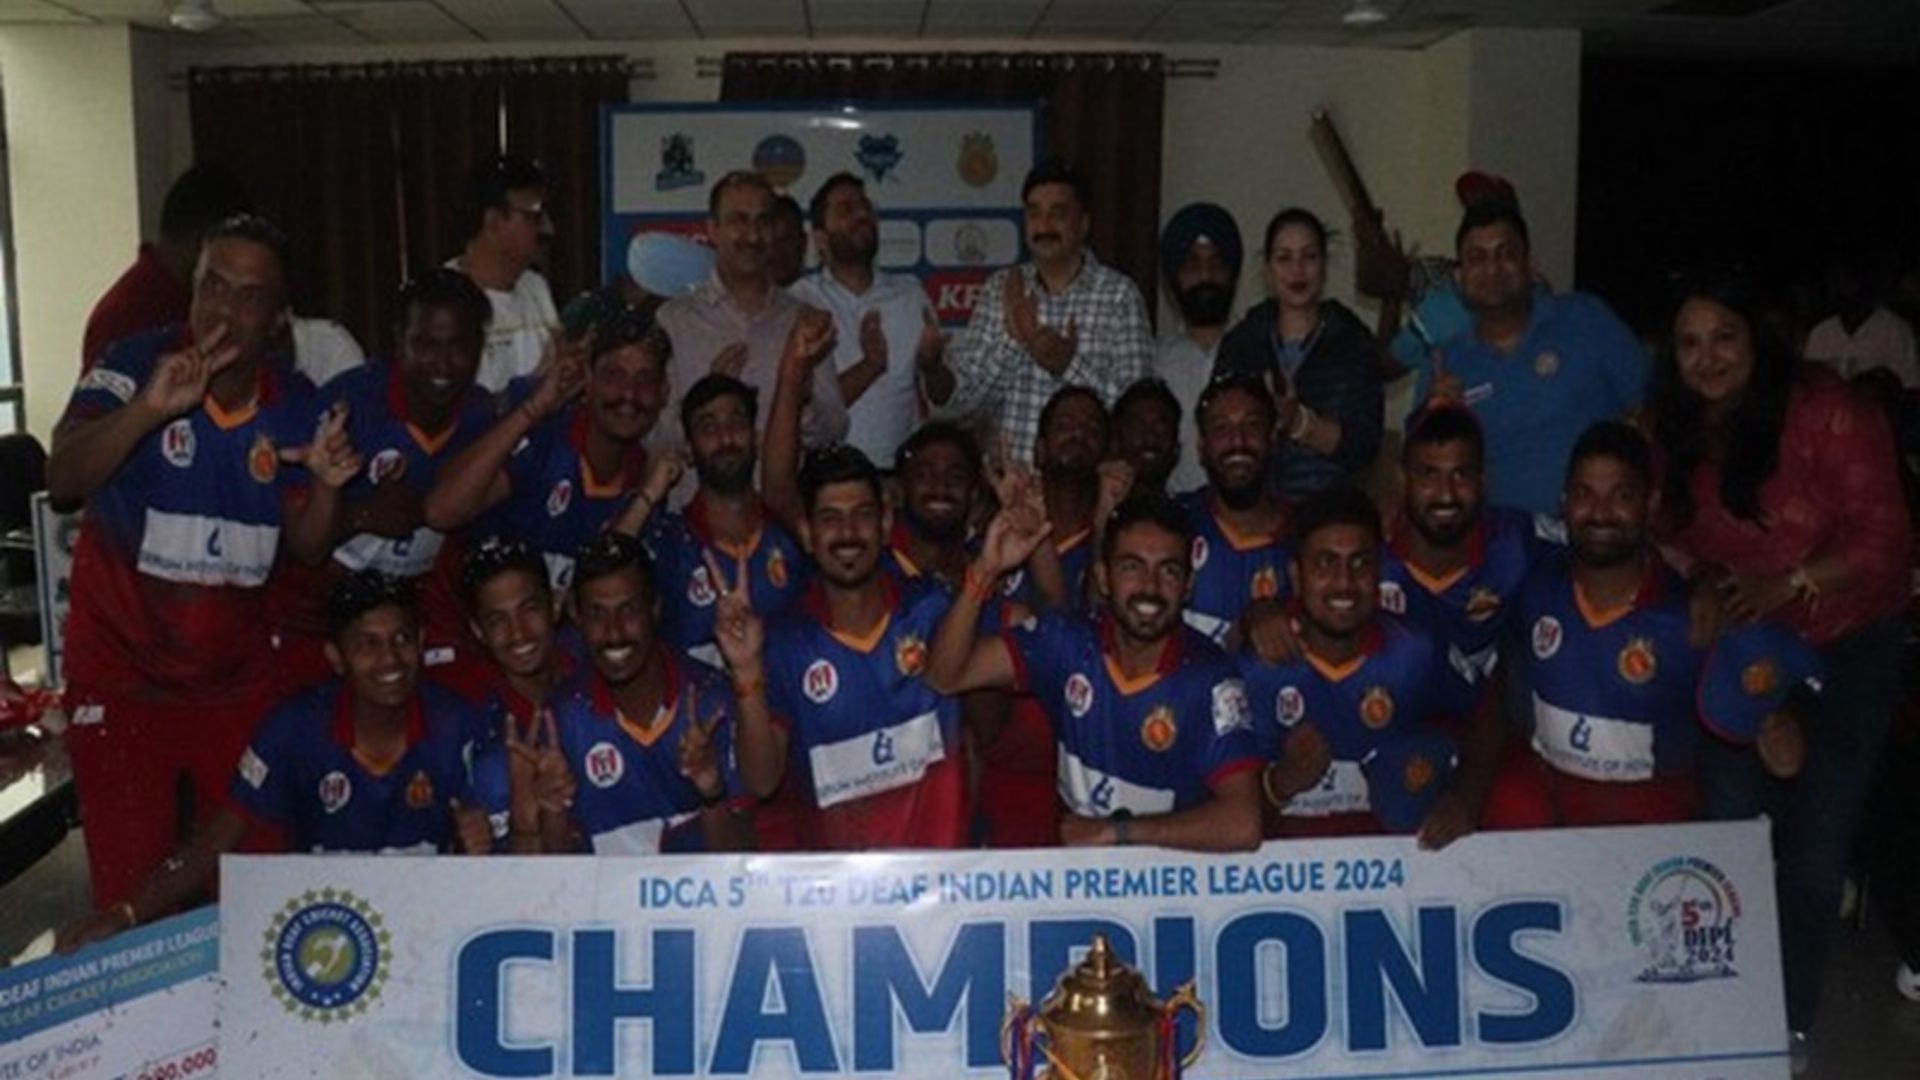 Bengaluru Badshahs Secure 5th Title of Deaf Indian Premier League Championship